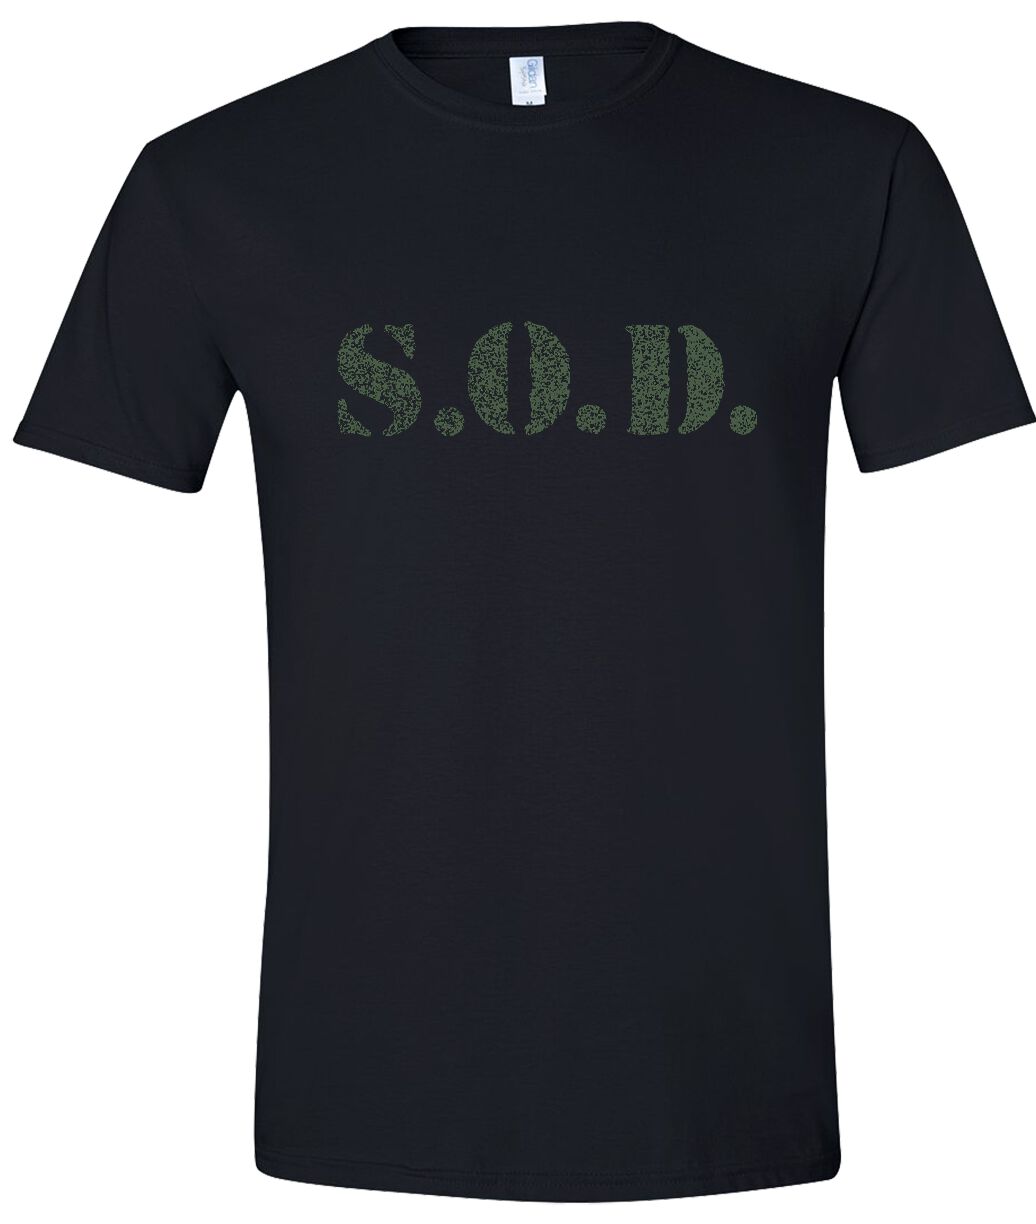 Stormtroopers Of Death T-Shirt - Speak English - S bis XXL - für Männer - Größe XL - schwarz  - Lizenziertes Merchandise!